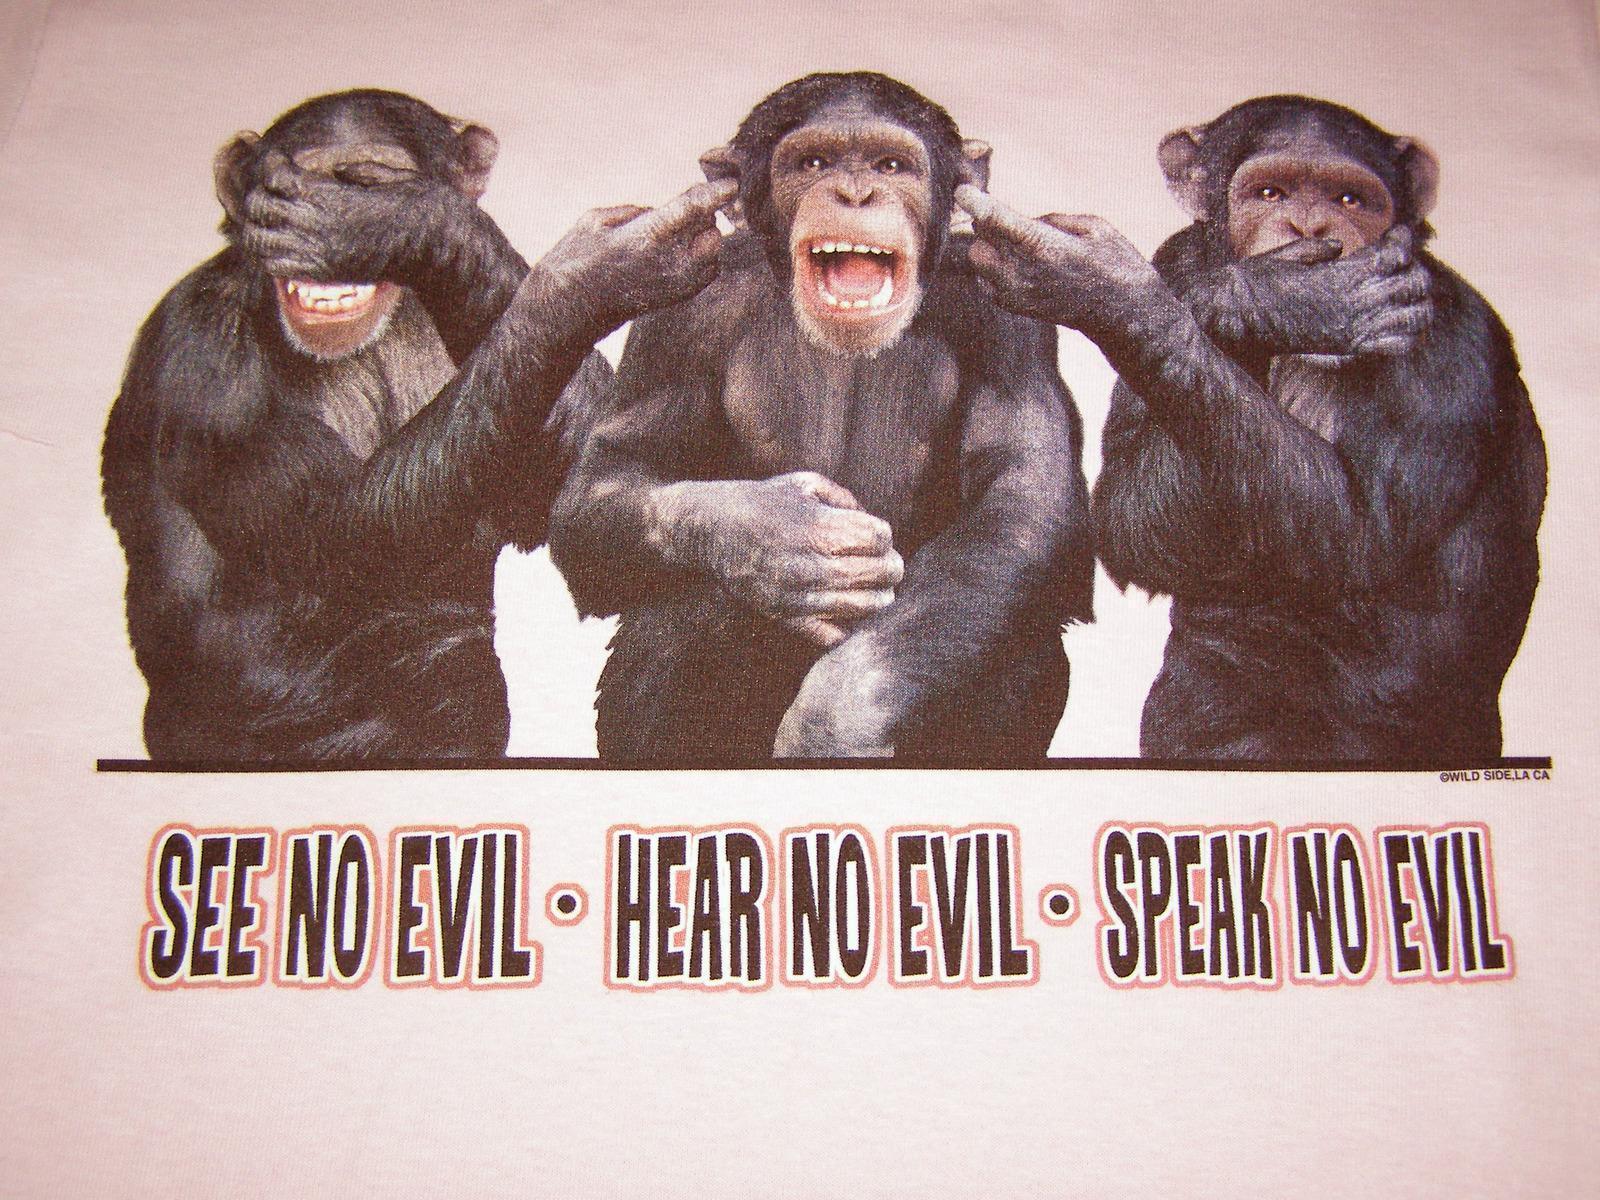 See__Hear__Speak_monkeys_Insert.jpg